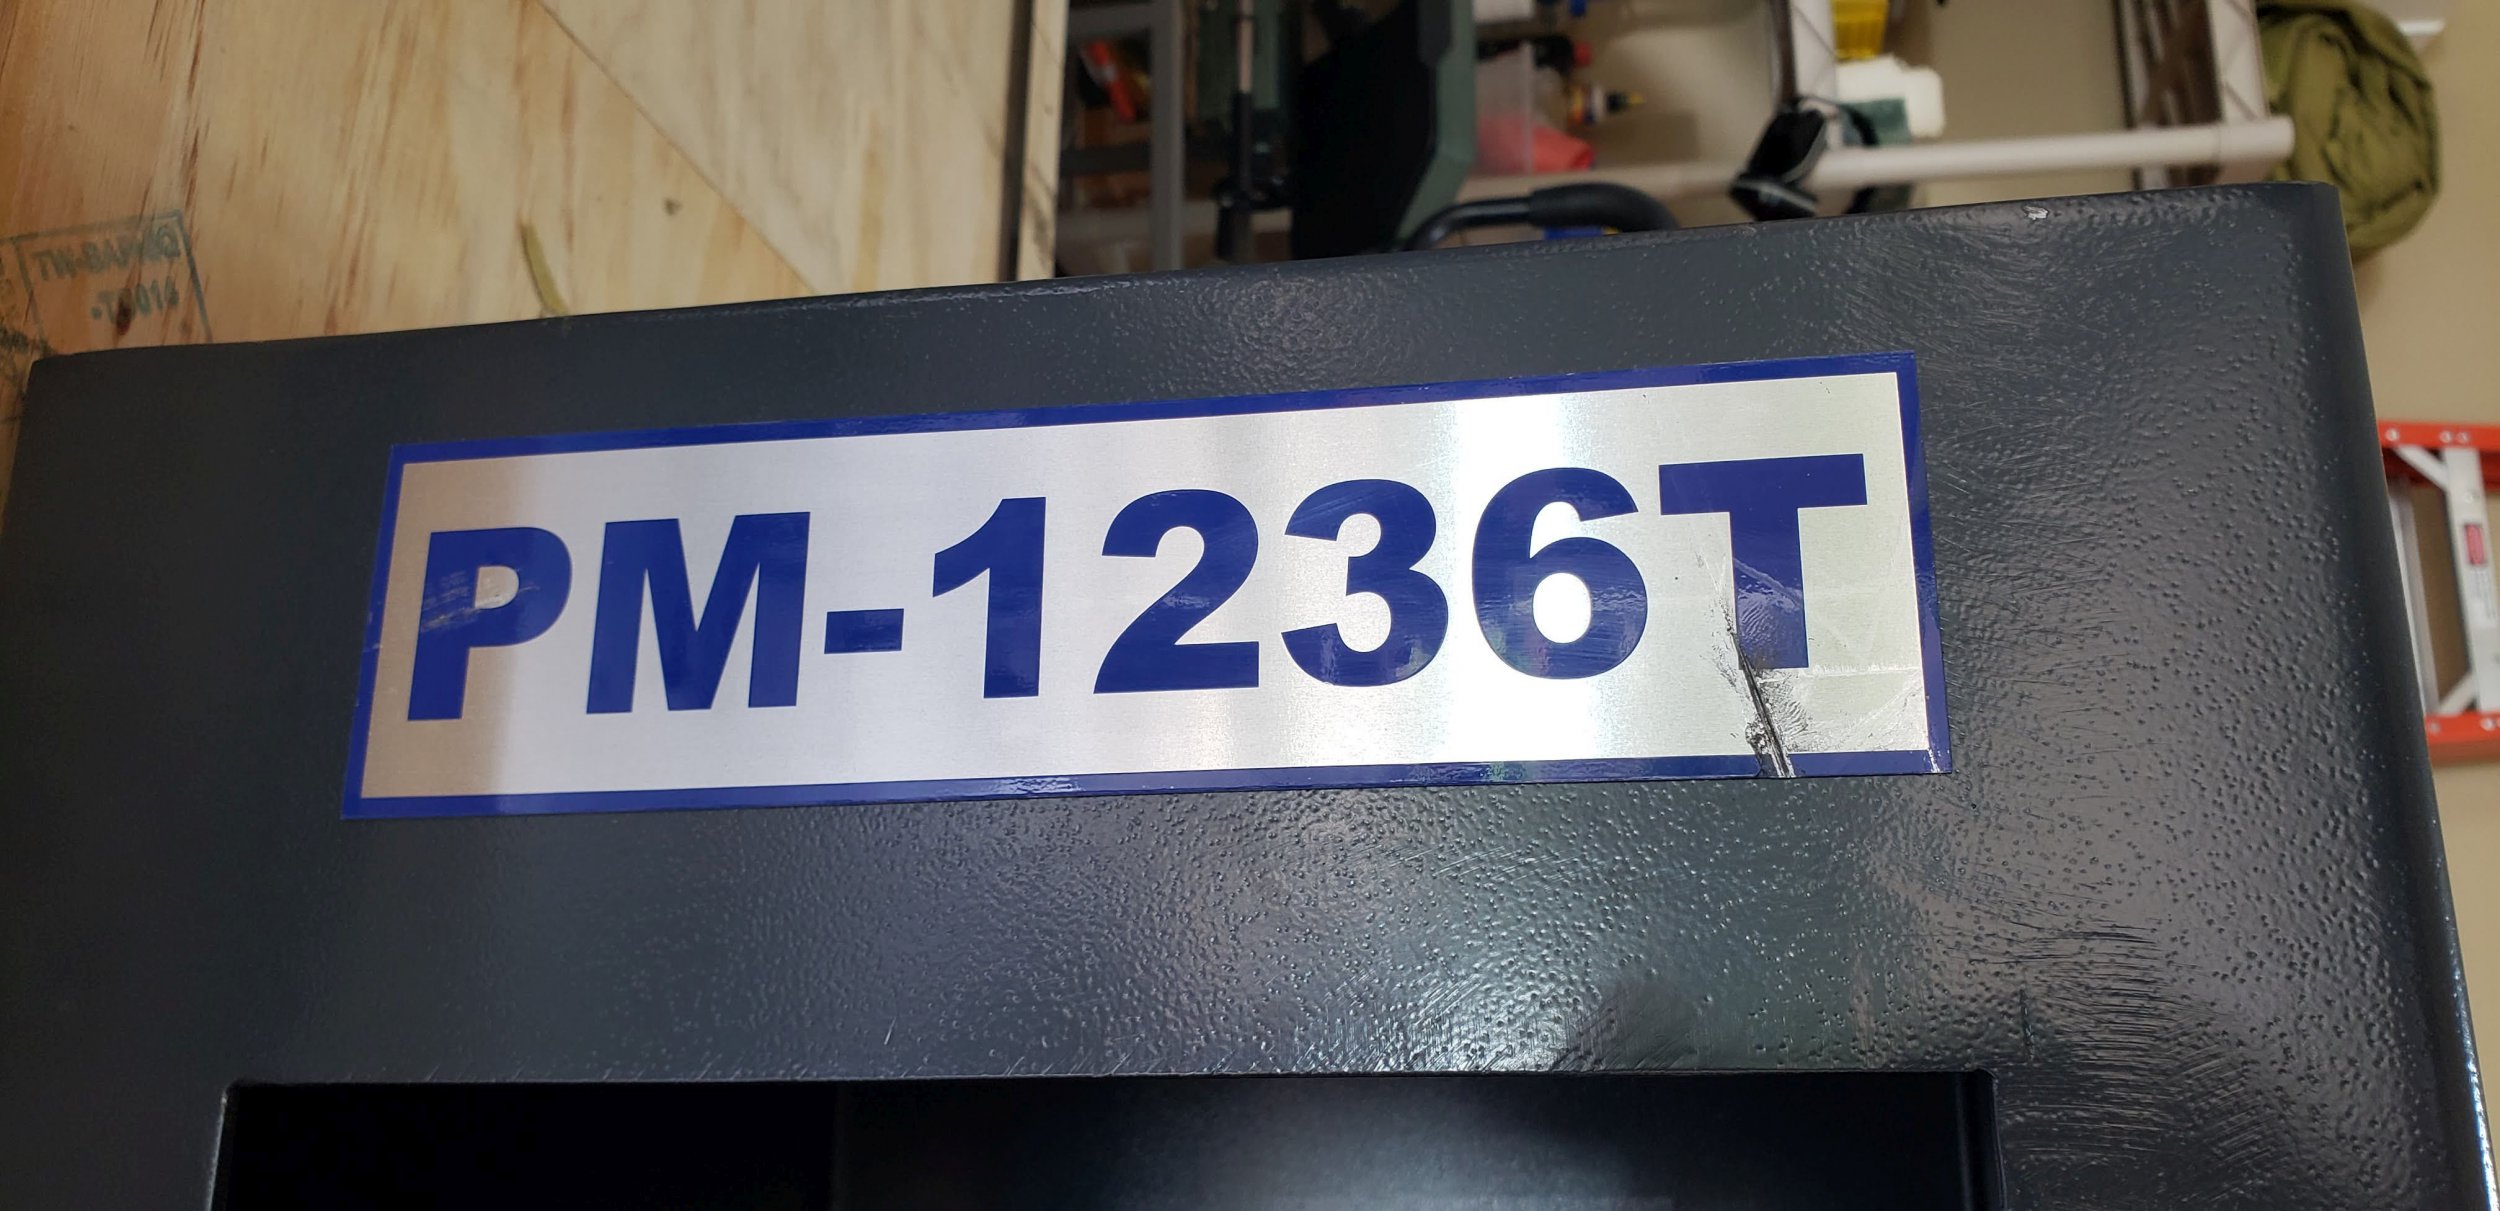 PM1236T Nameplate gouge.jpg